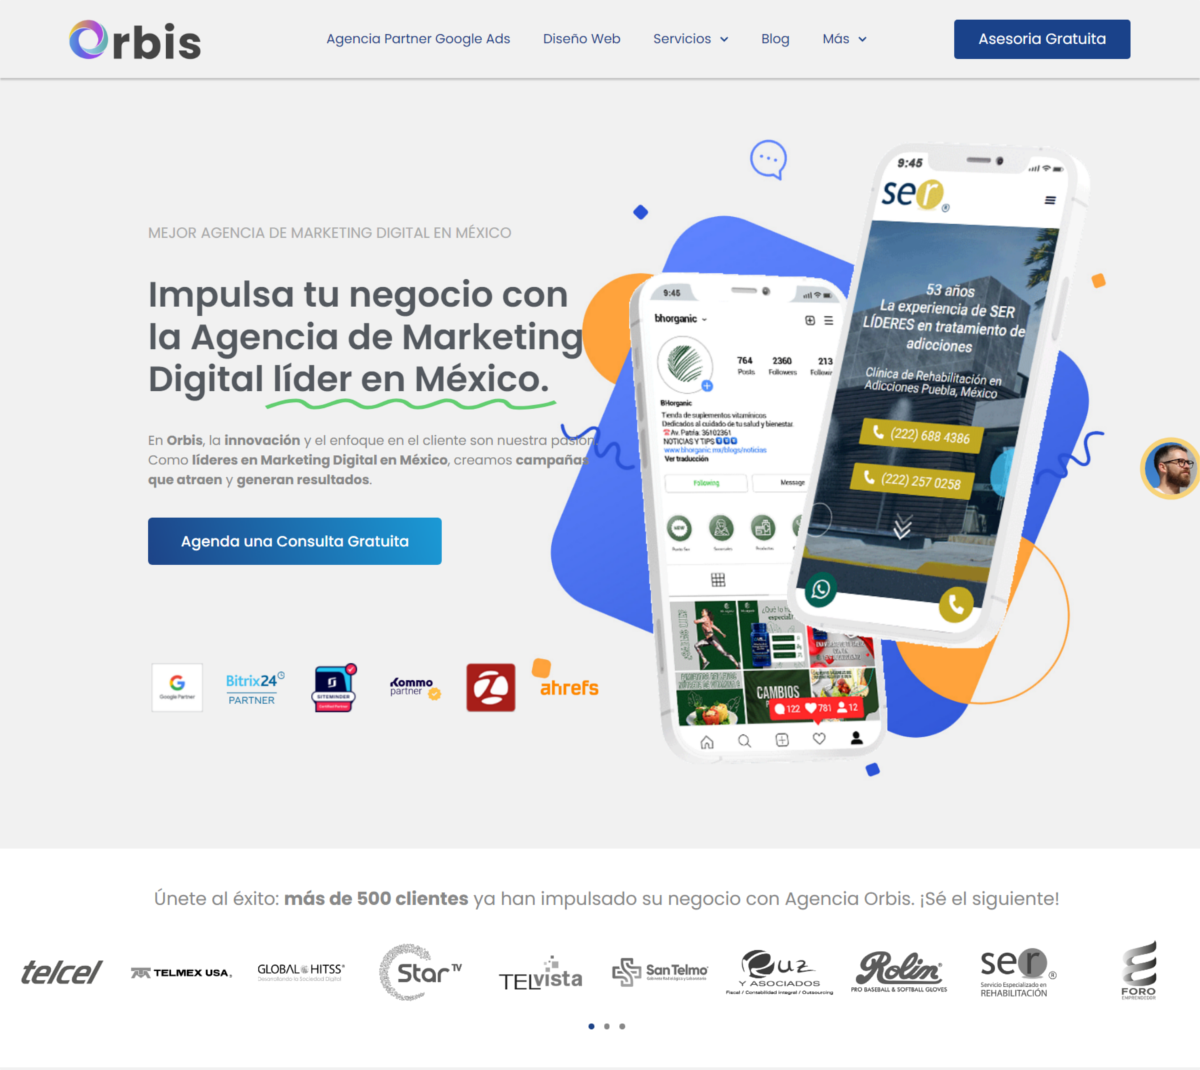 Orbis se ha convertido en una gran agencia de marketing digital con importantes clientes